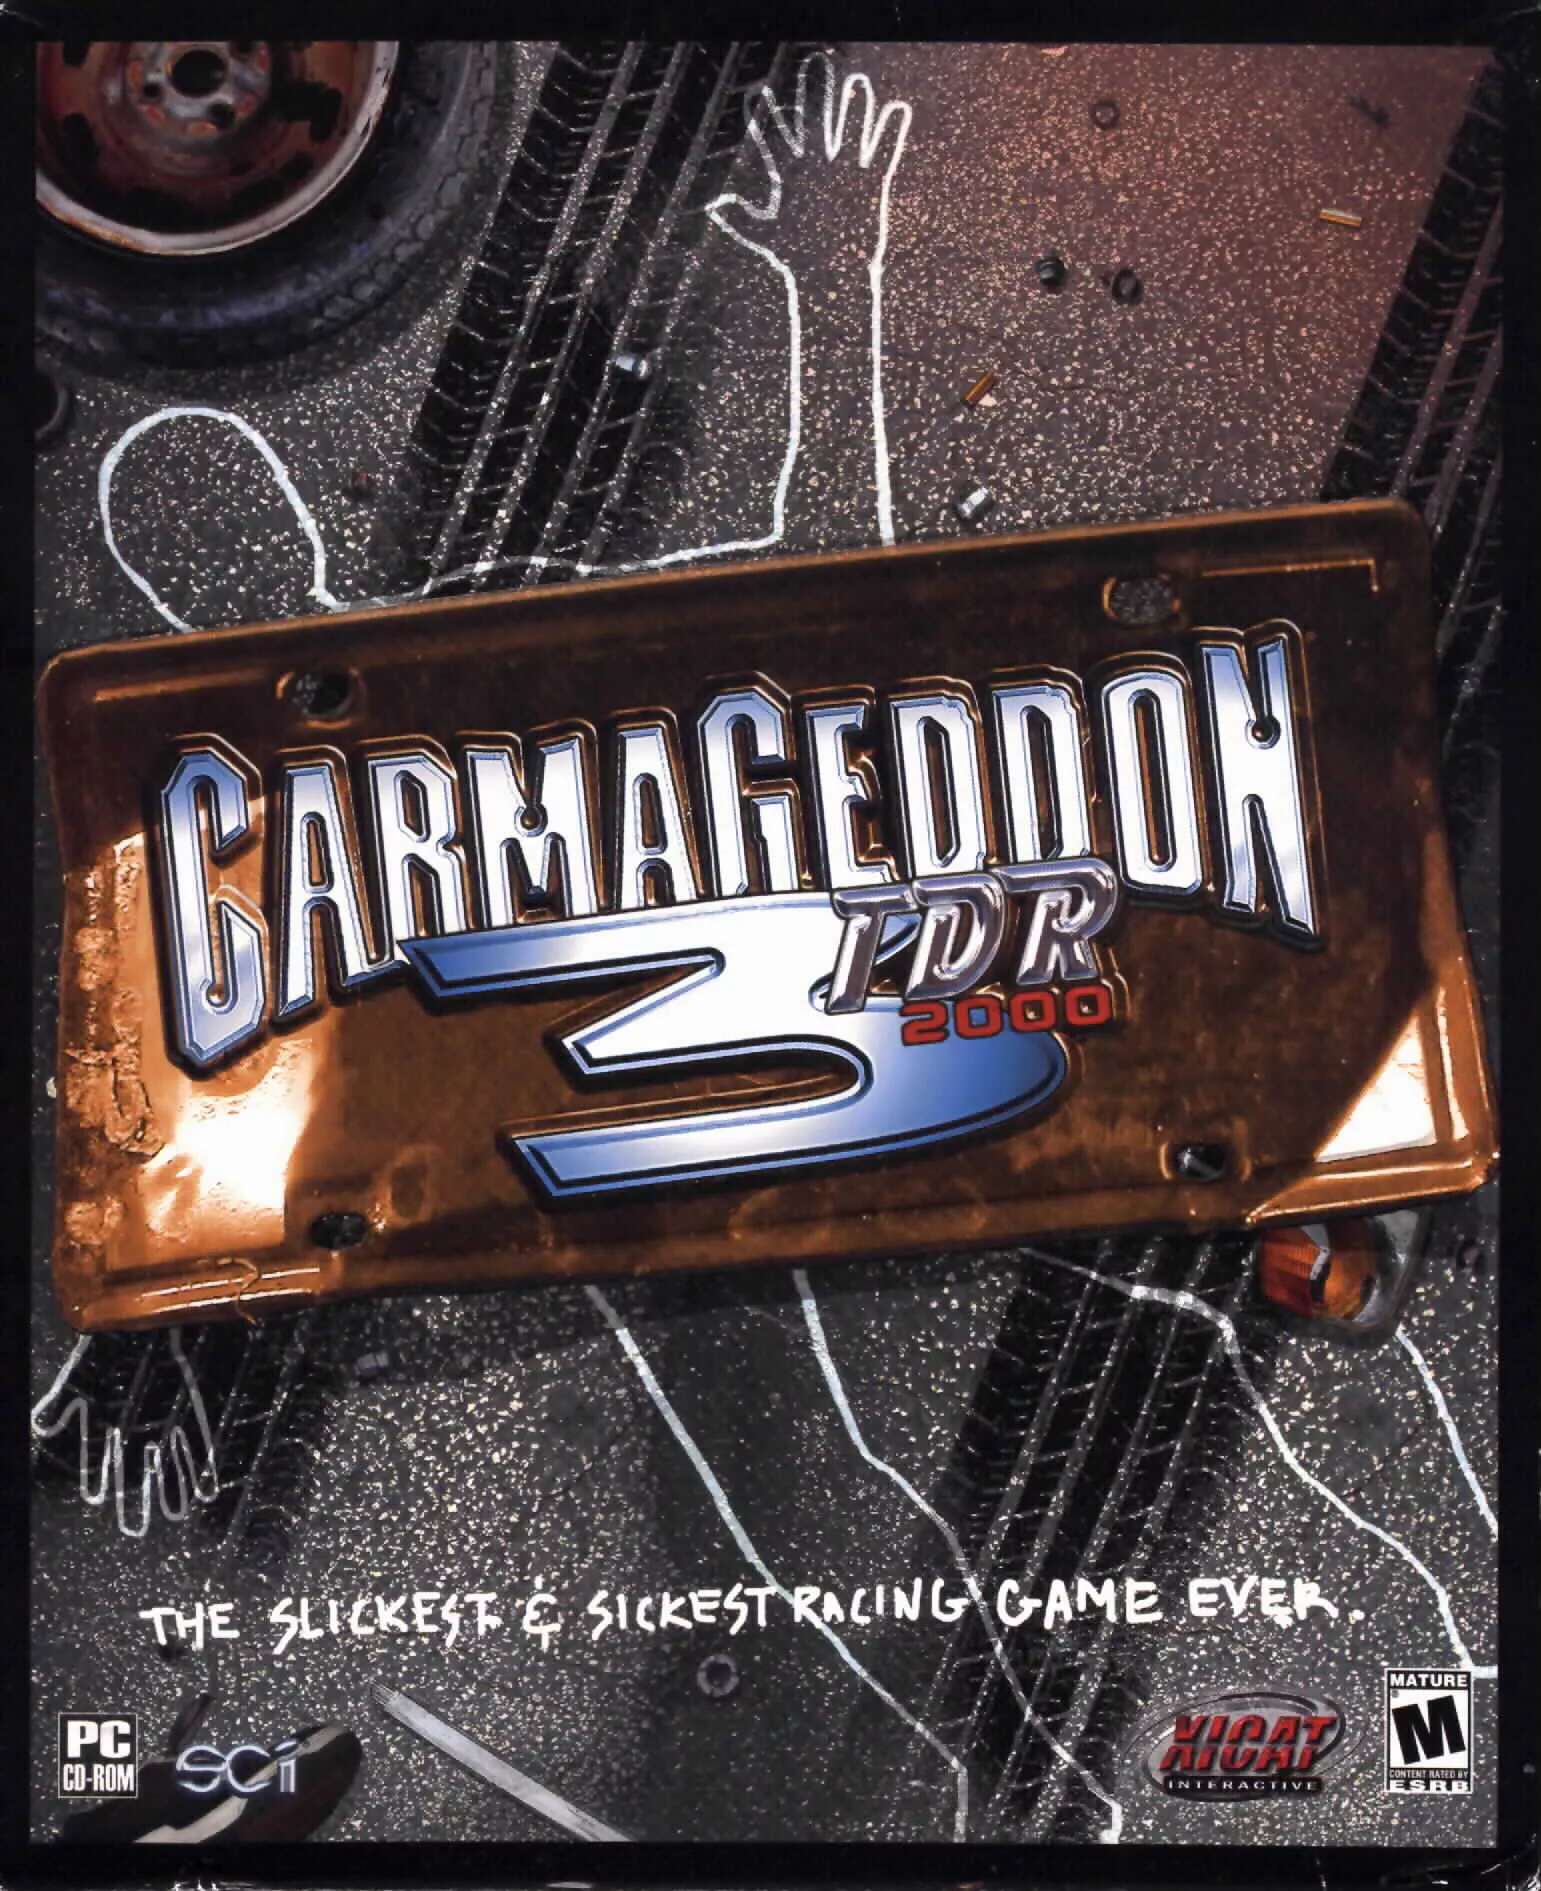 Carmageddon 3: TDR 2000 + The Nosebleed Pack